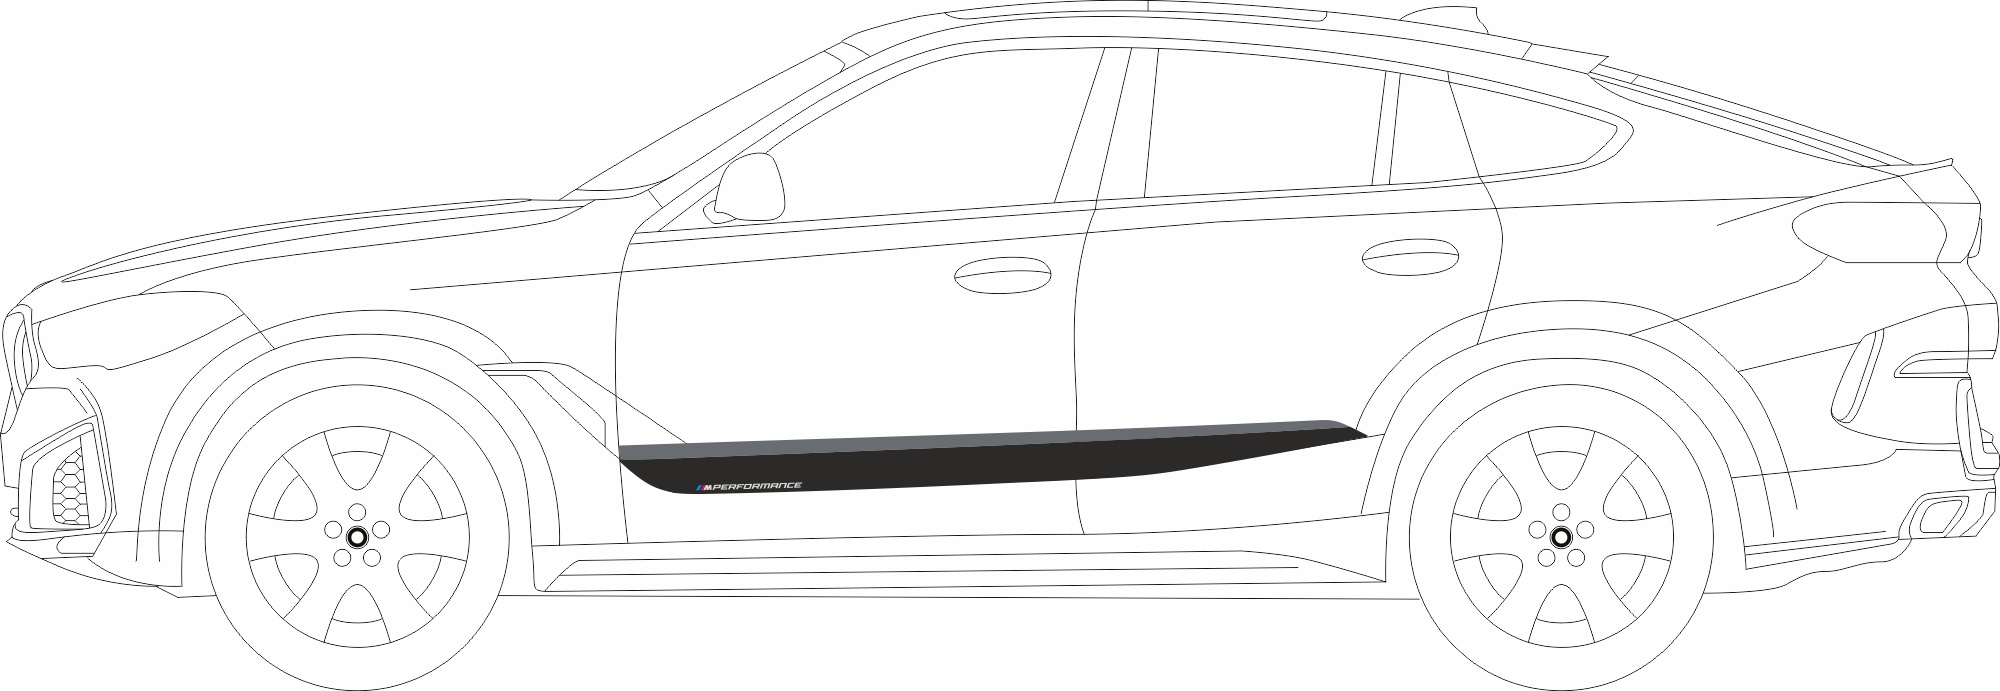 BMW X5 G05 folie naklejki decals stripes sticker aufkleber nalepky samolepky tuning